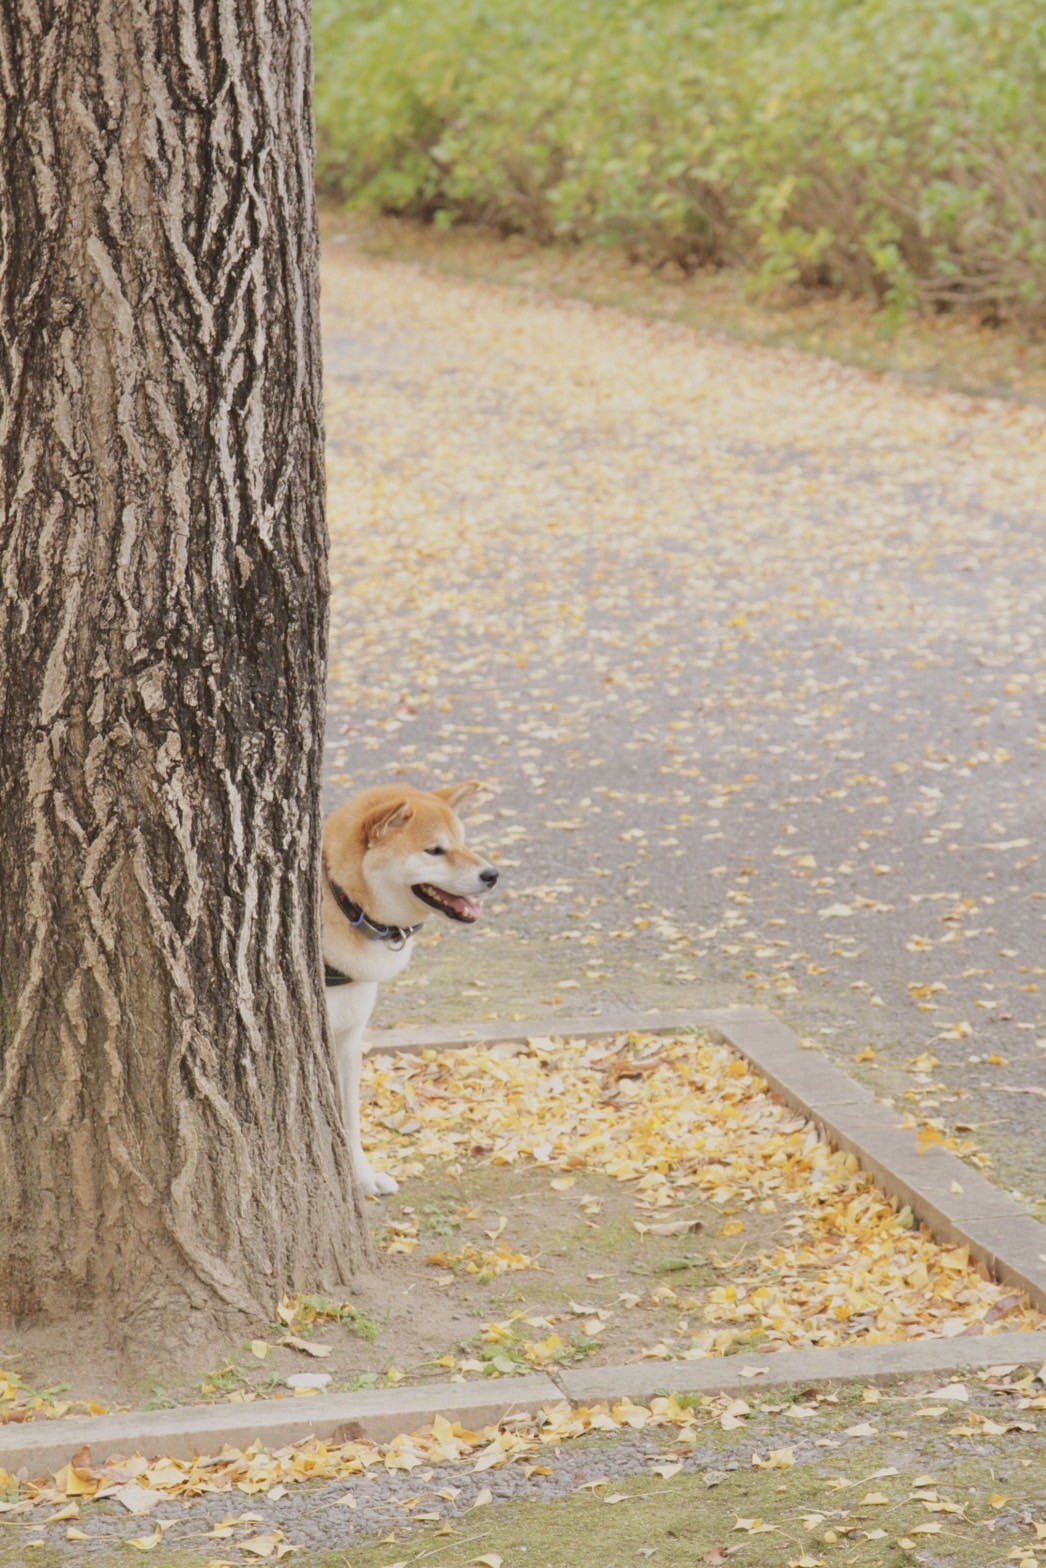 正在取景時。突然發現樹後方有隻可愛柴犬探頭偷笑。